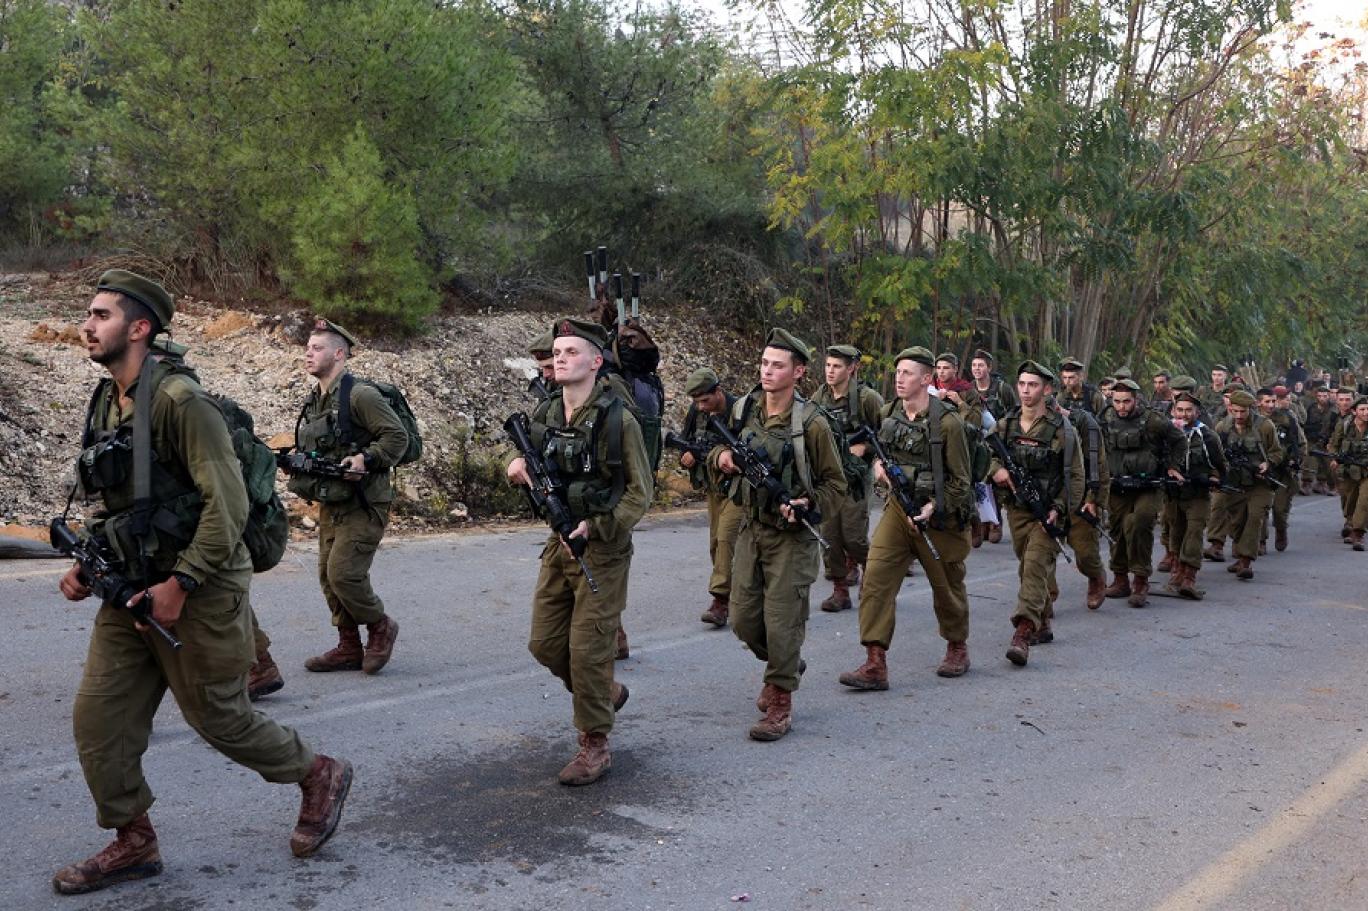 اسرائيل تغري طلابها بمنح مالية ومساعدات للخدمة في الجيش